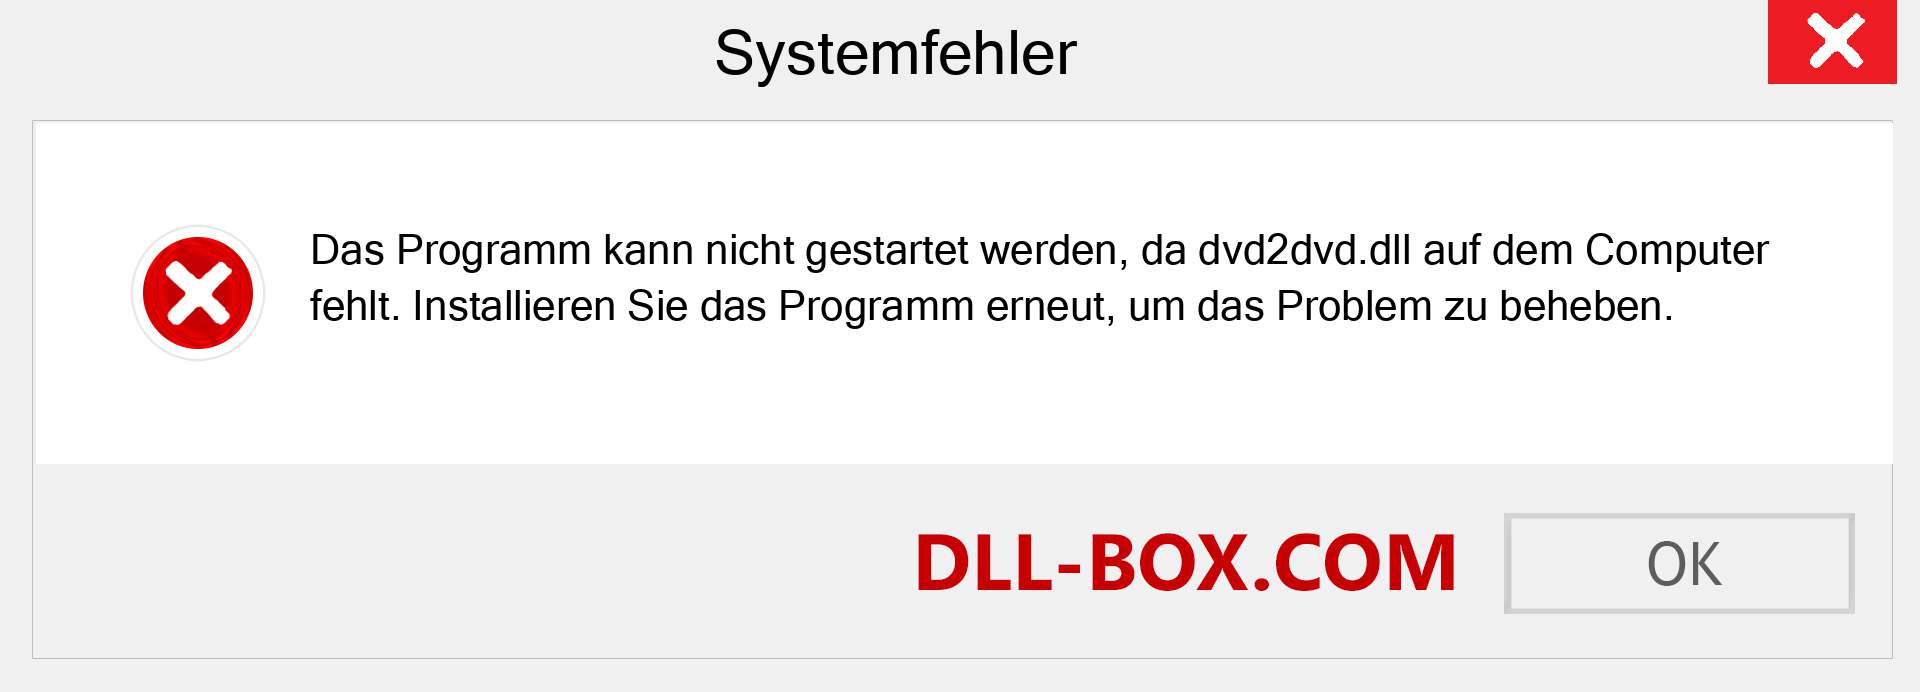 dvd2dvd.dll-Datei fehlt?. Download für Windows 7, 8, 10 - Fix dvd2dvd dll Missing Error unter Windows, Fotos, Bildern